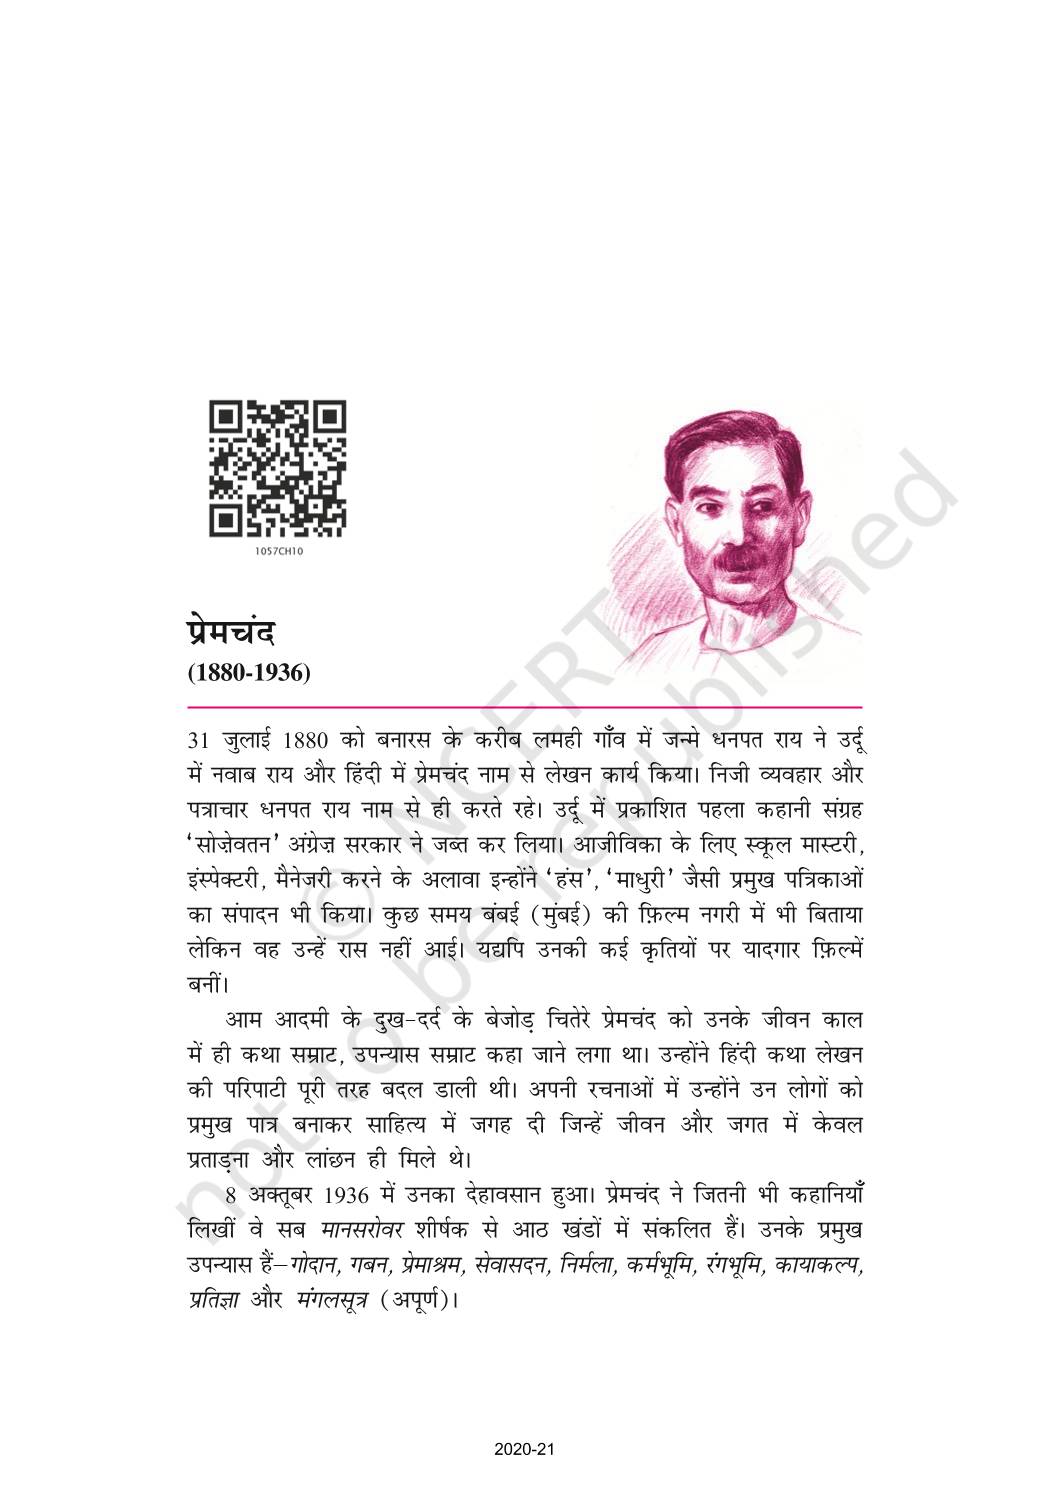 Premchand Bade Bhi Sahab - NCERT Book of Class 10 Hindi Sparsh Part 2